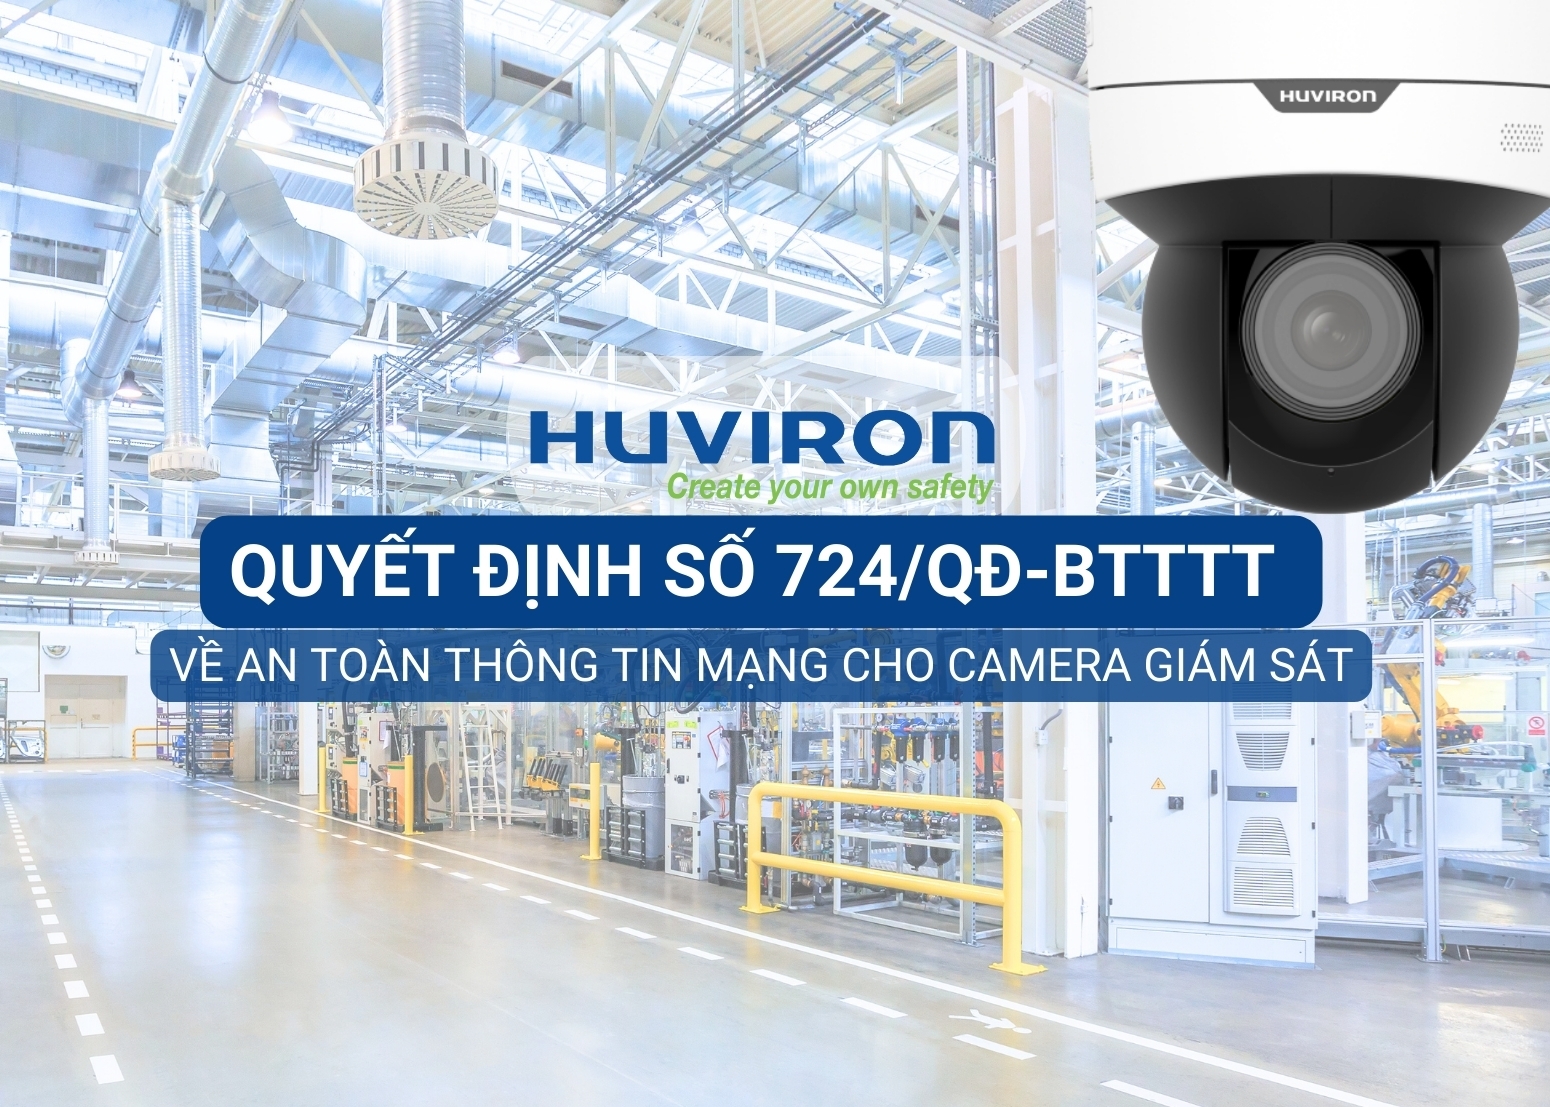 Camera giám sát Huviron được sử dụng rộng rãi